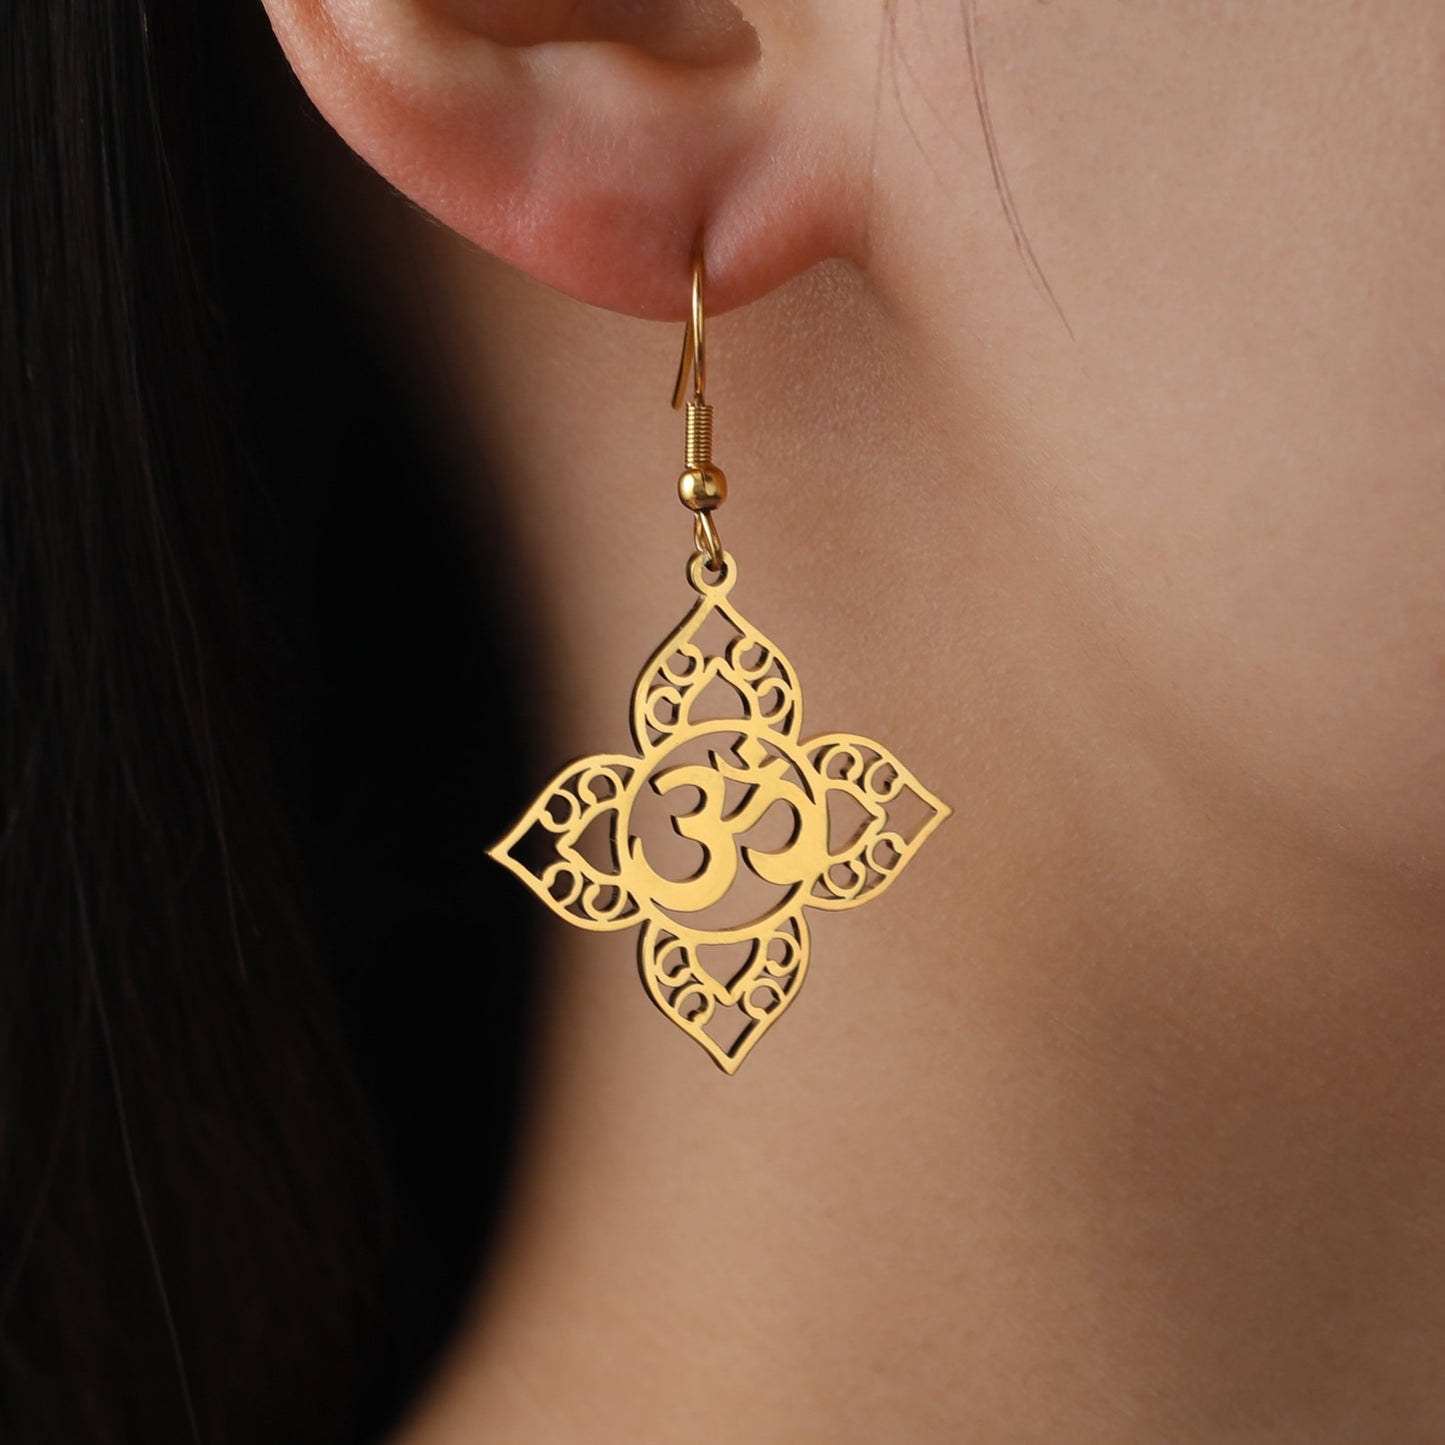 Boucle d'oreilles pendantes Fleur de Lotus symbole Hindou "Om", portées, couleur Or